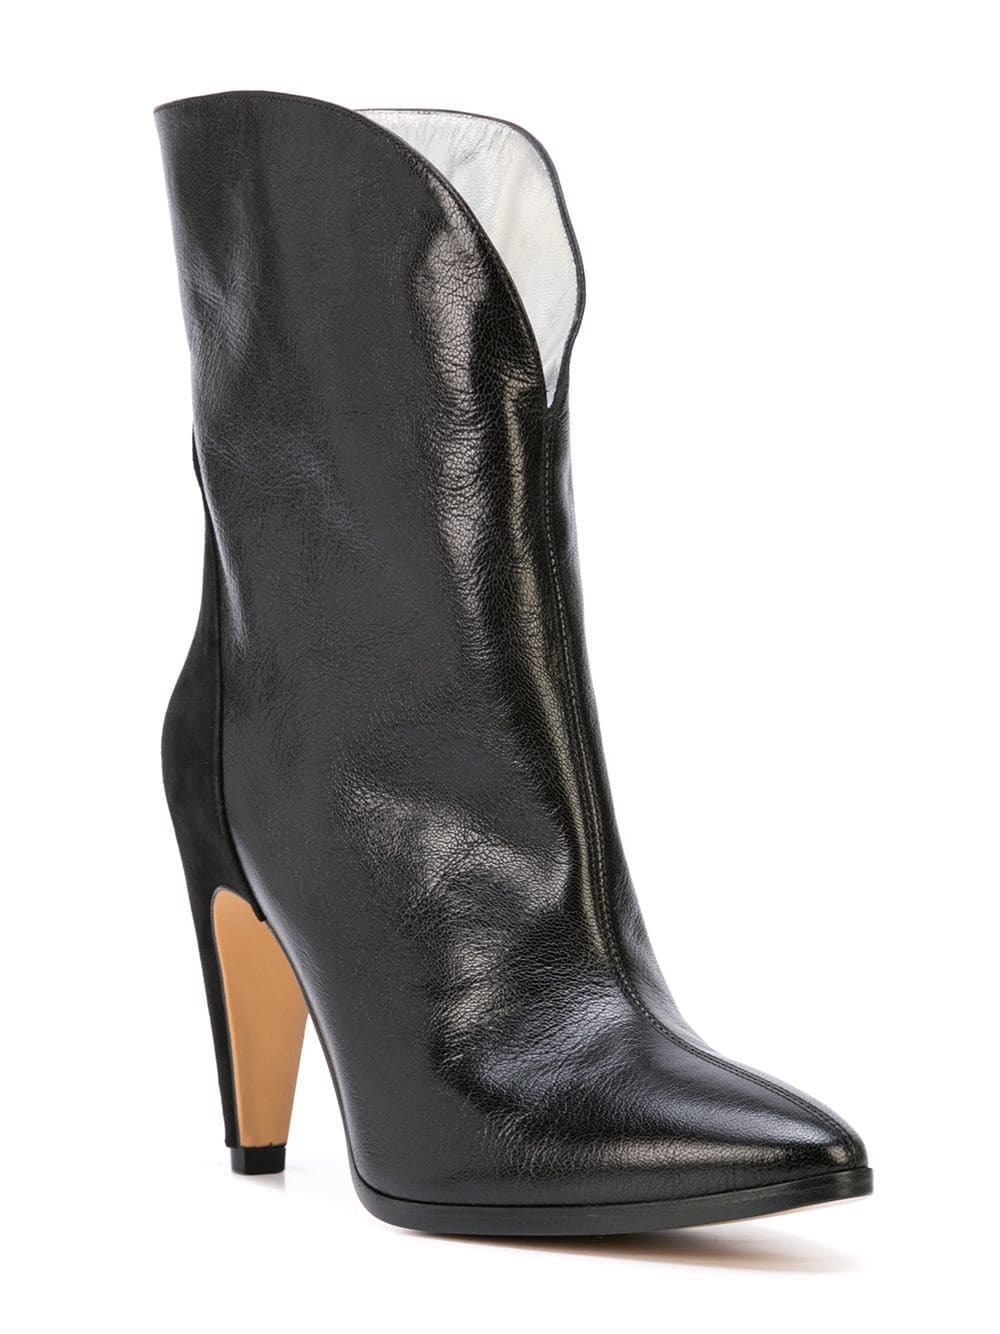 black mid heel ankle boot